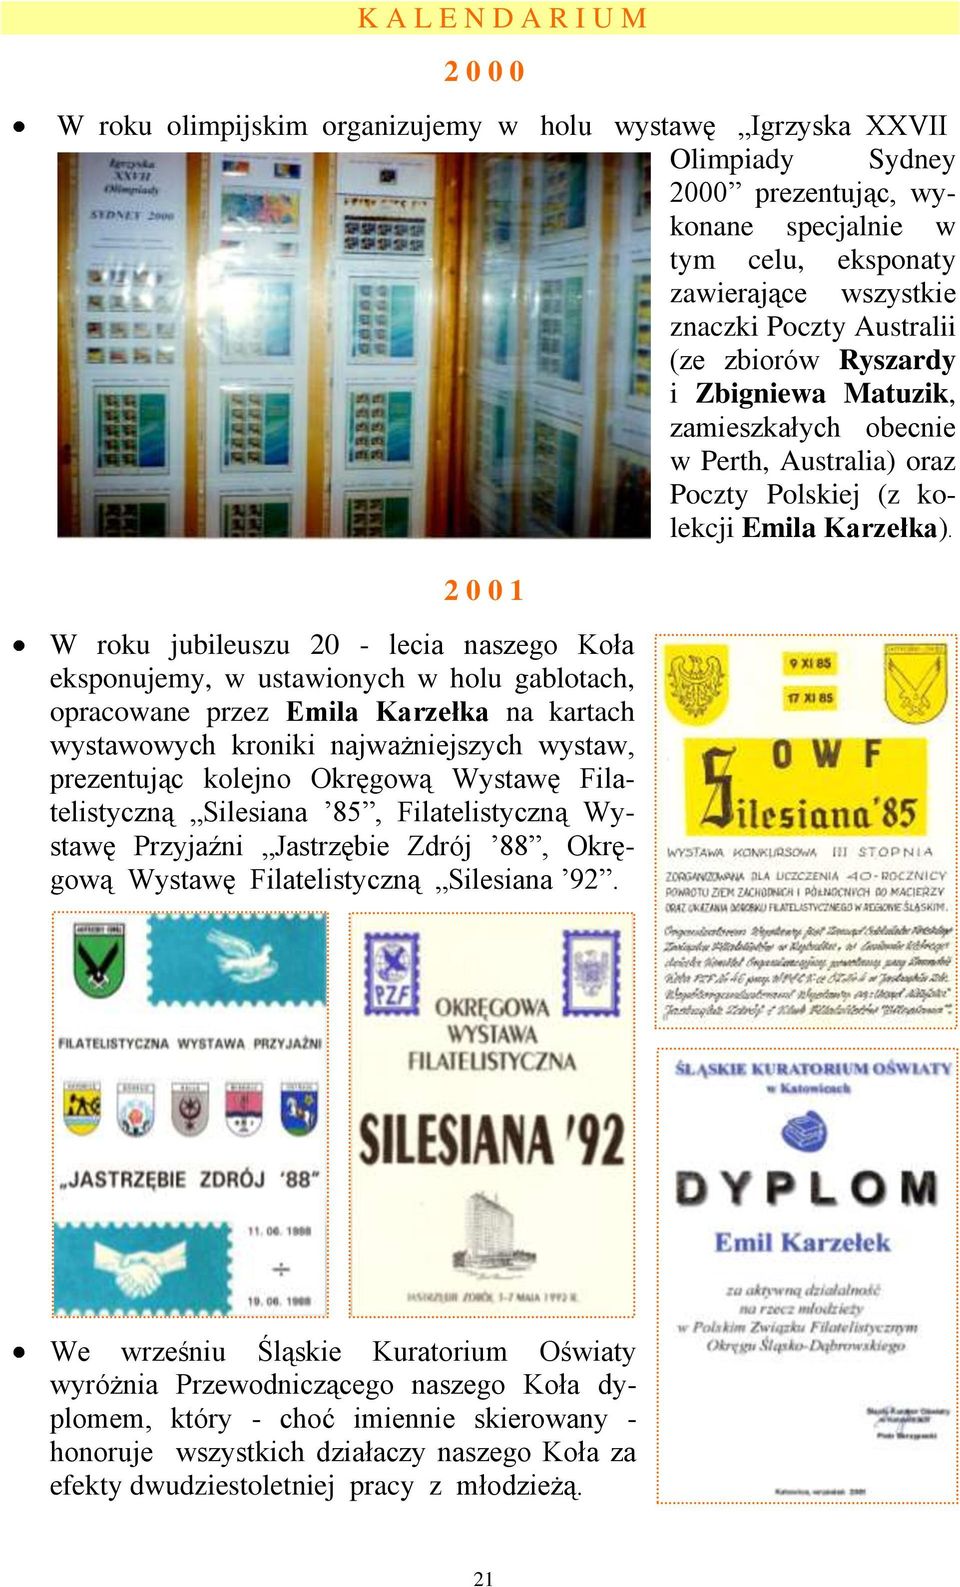 2 0 0 1 W roku jubileuszu 20 - lecia naszego Koła eksponujemy, w ustawionych w holu gablotach, opracowane przez Emila Karzełka na kartach wystawowych kroniki najważniejszych wystaw, prezentując